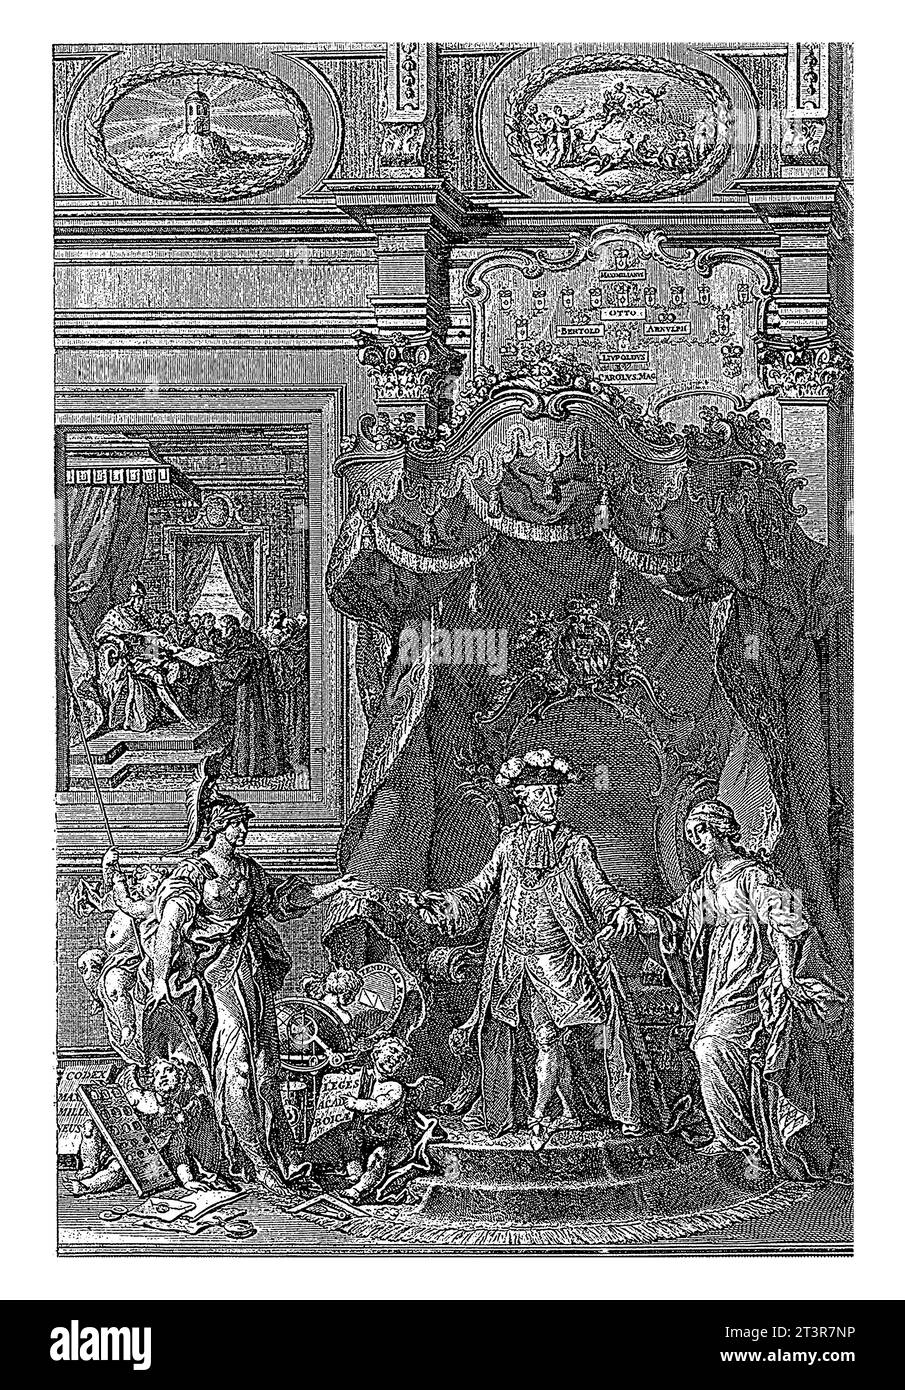 Ritratto di Massimiliano III Giuseppe, elettore di Baviera con allegorie, Johann Esaias Nilson, 1774 l'elettore guida la personificazione della Baviera. Foto Stock